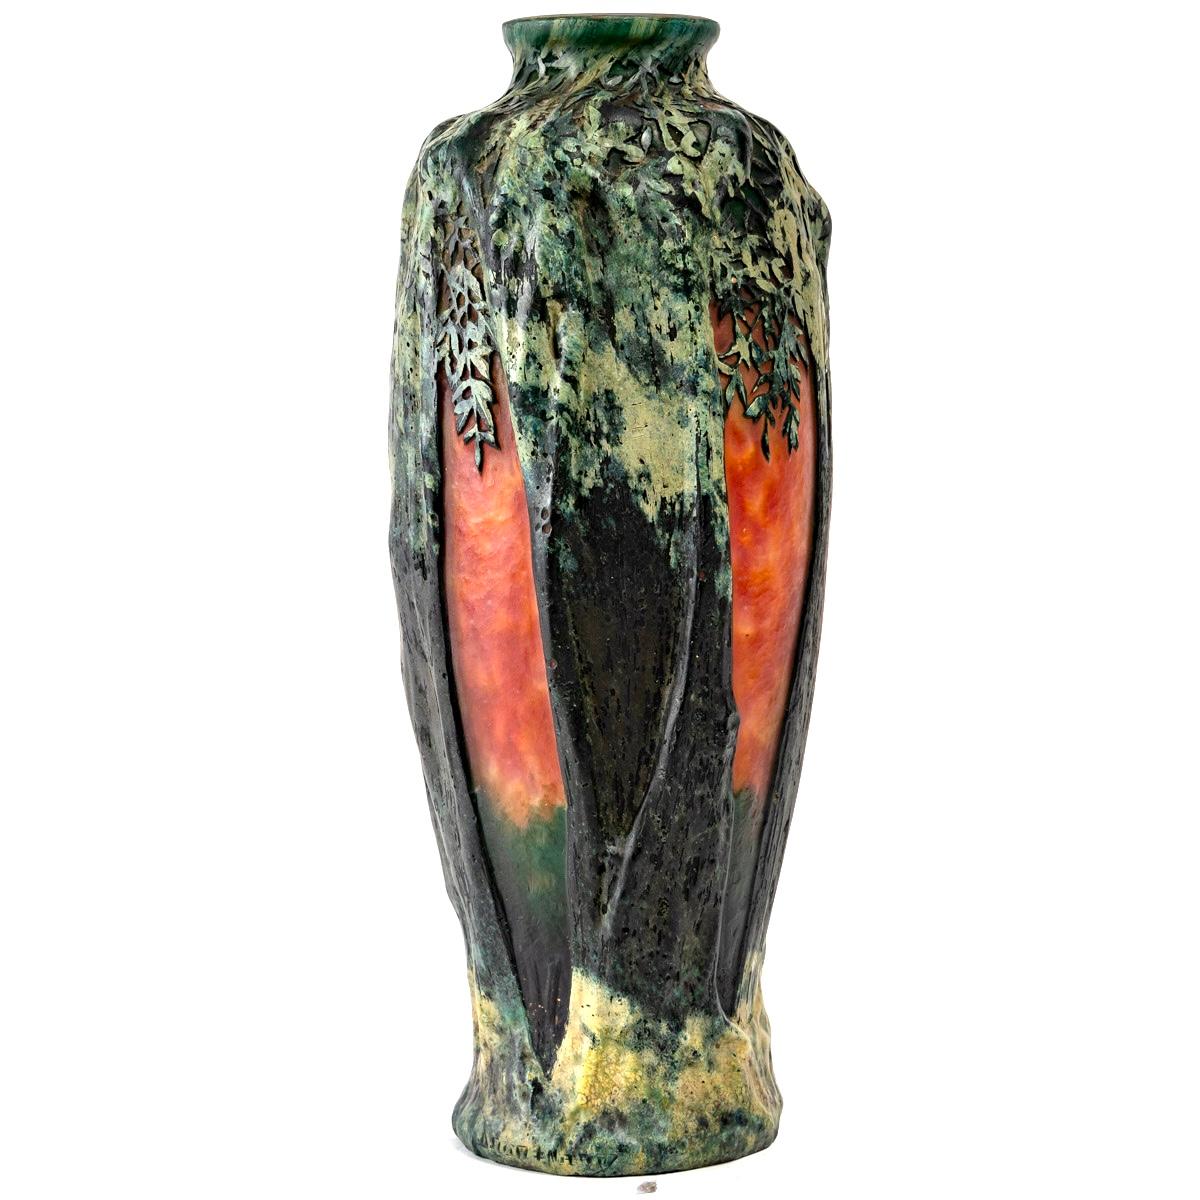 Molded Daum Nancy Art Nouveau Vase Multilayer Blown Glass Acid Etched Trees and Village